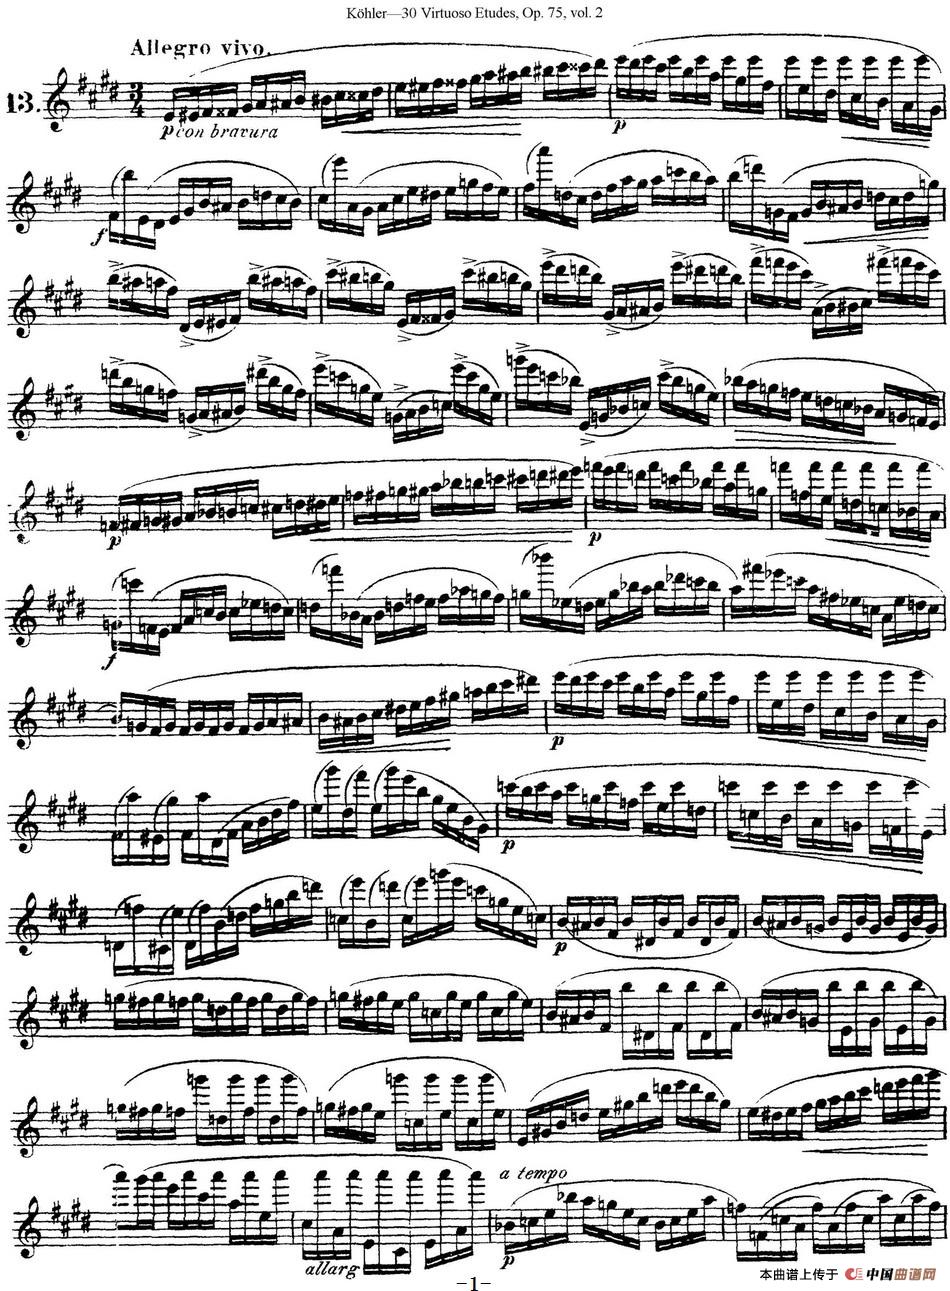 柯勒30首高级长笛练习曲作品75号（NO.13）